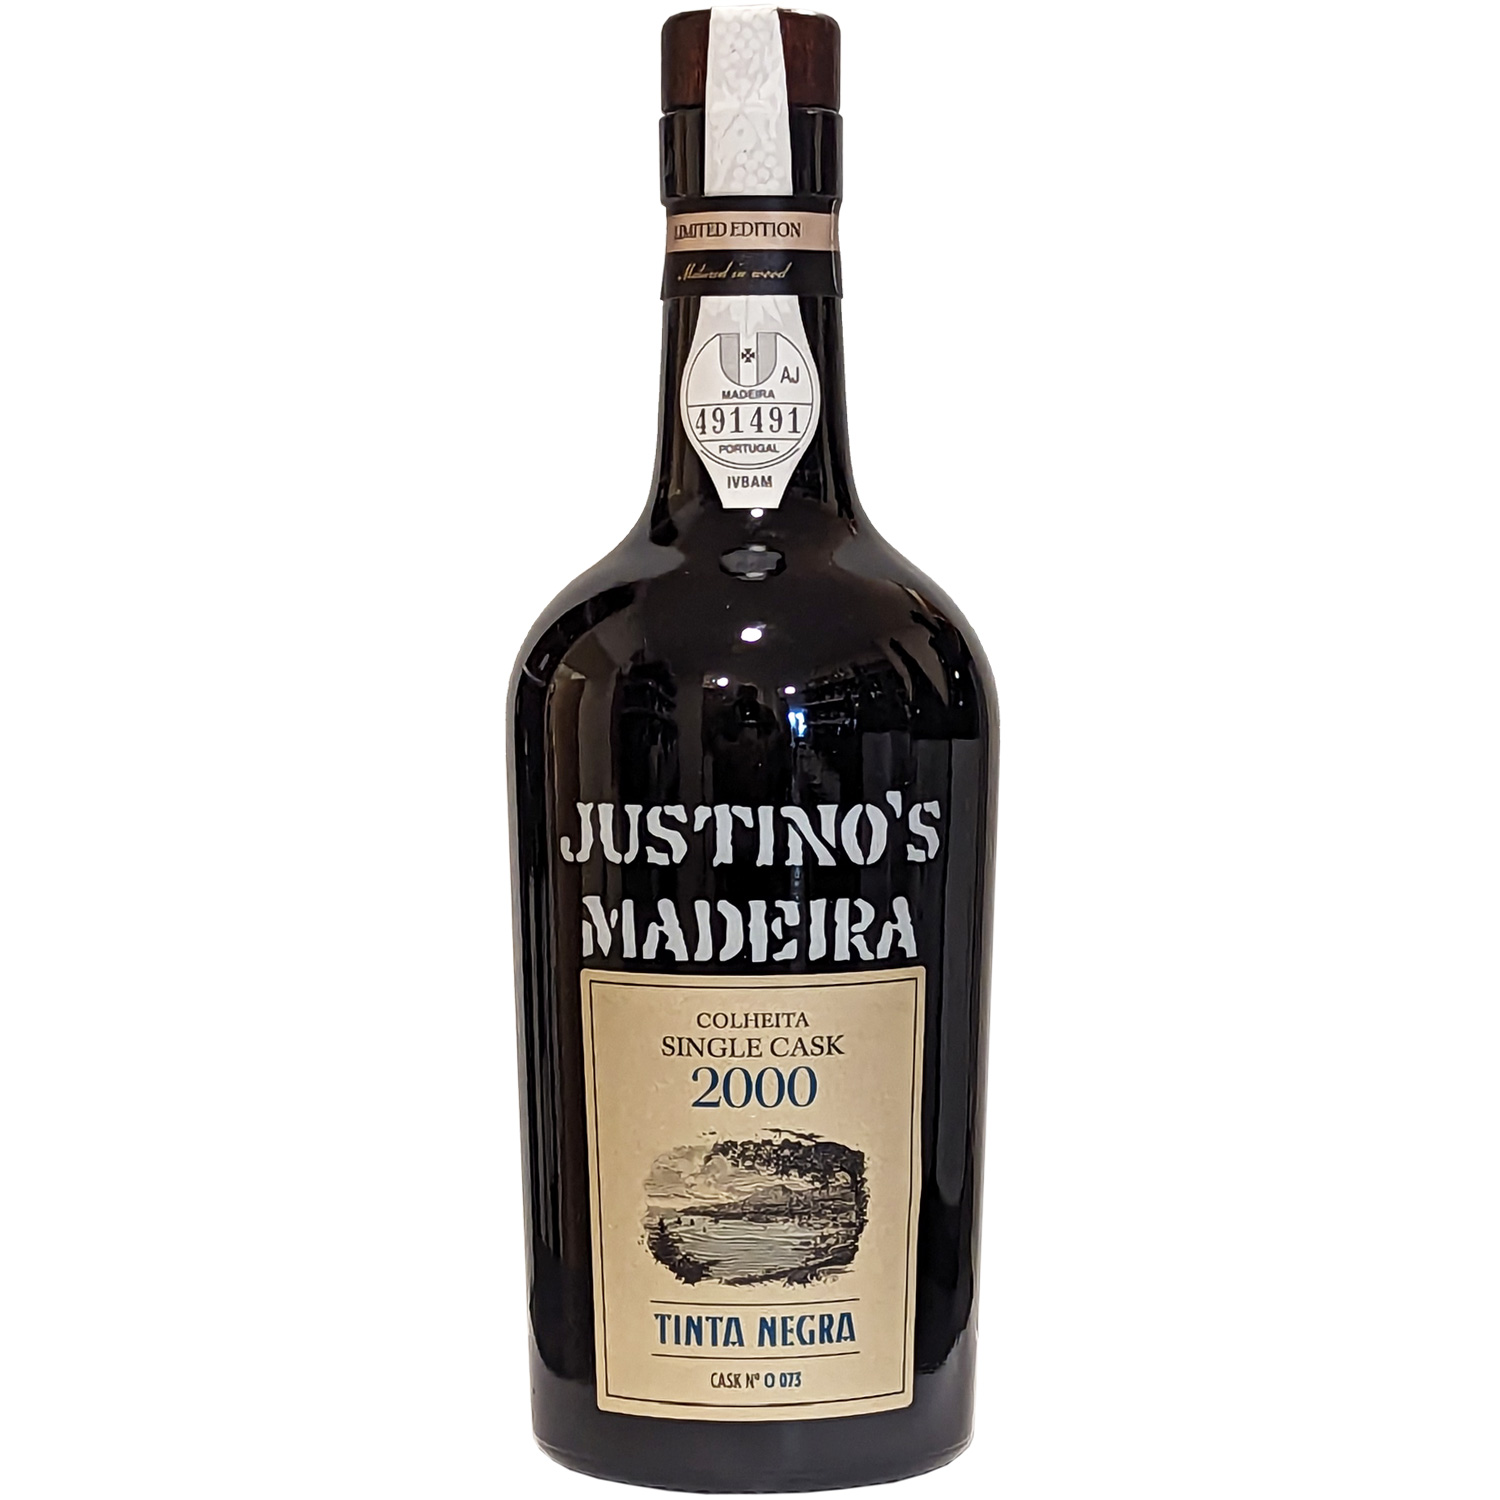 Justino's Single Cask Tinta Negra 2000 Madeira